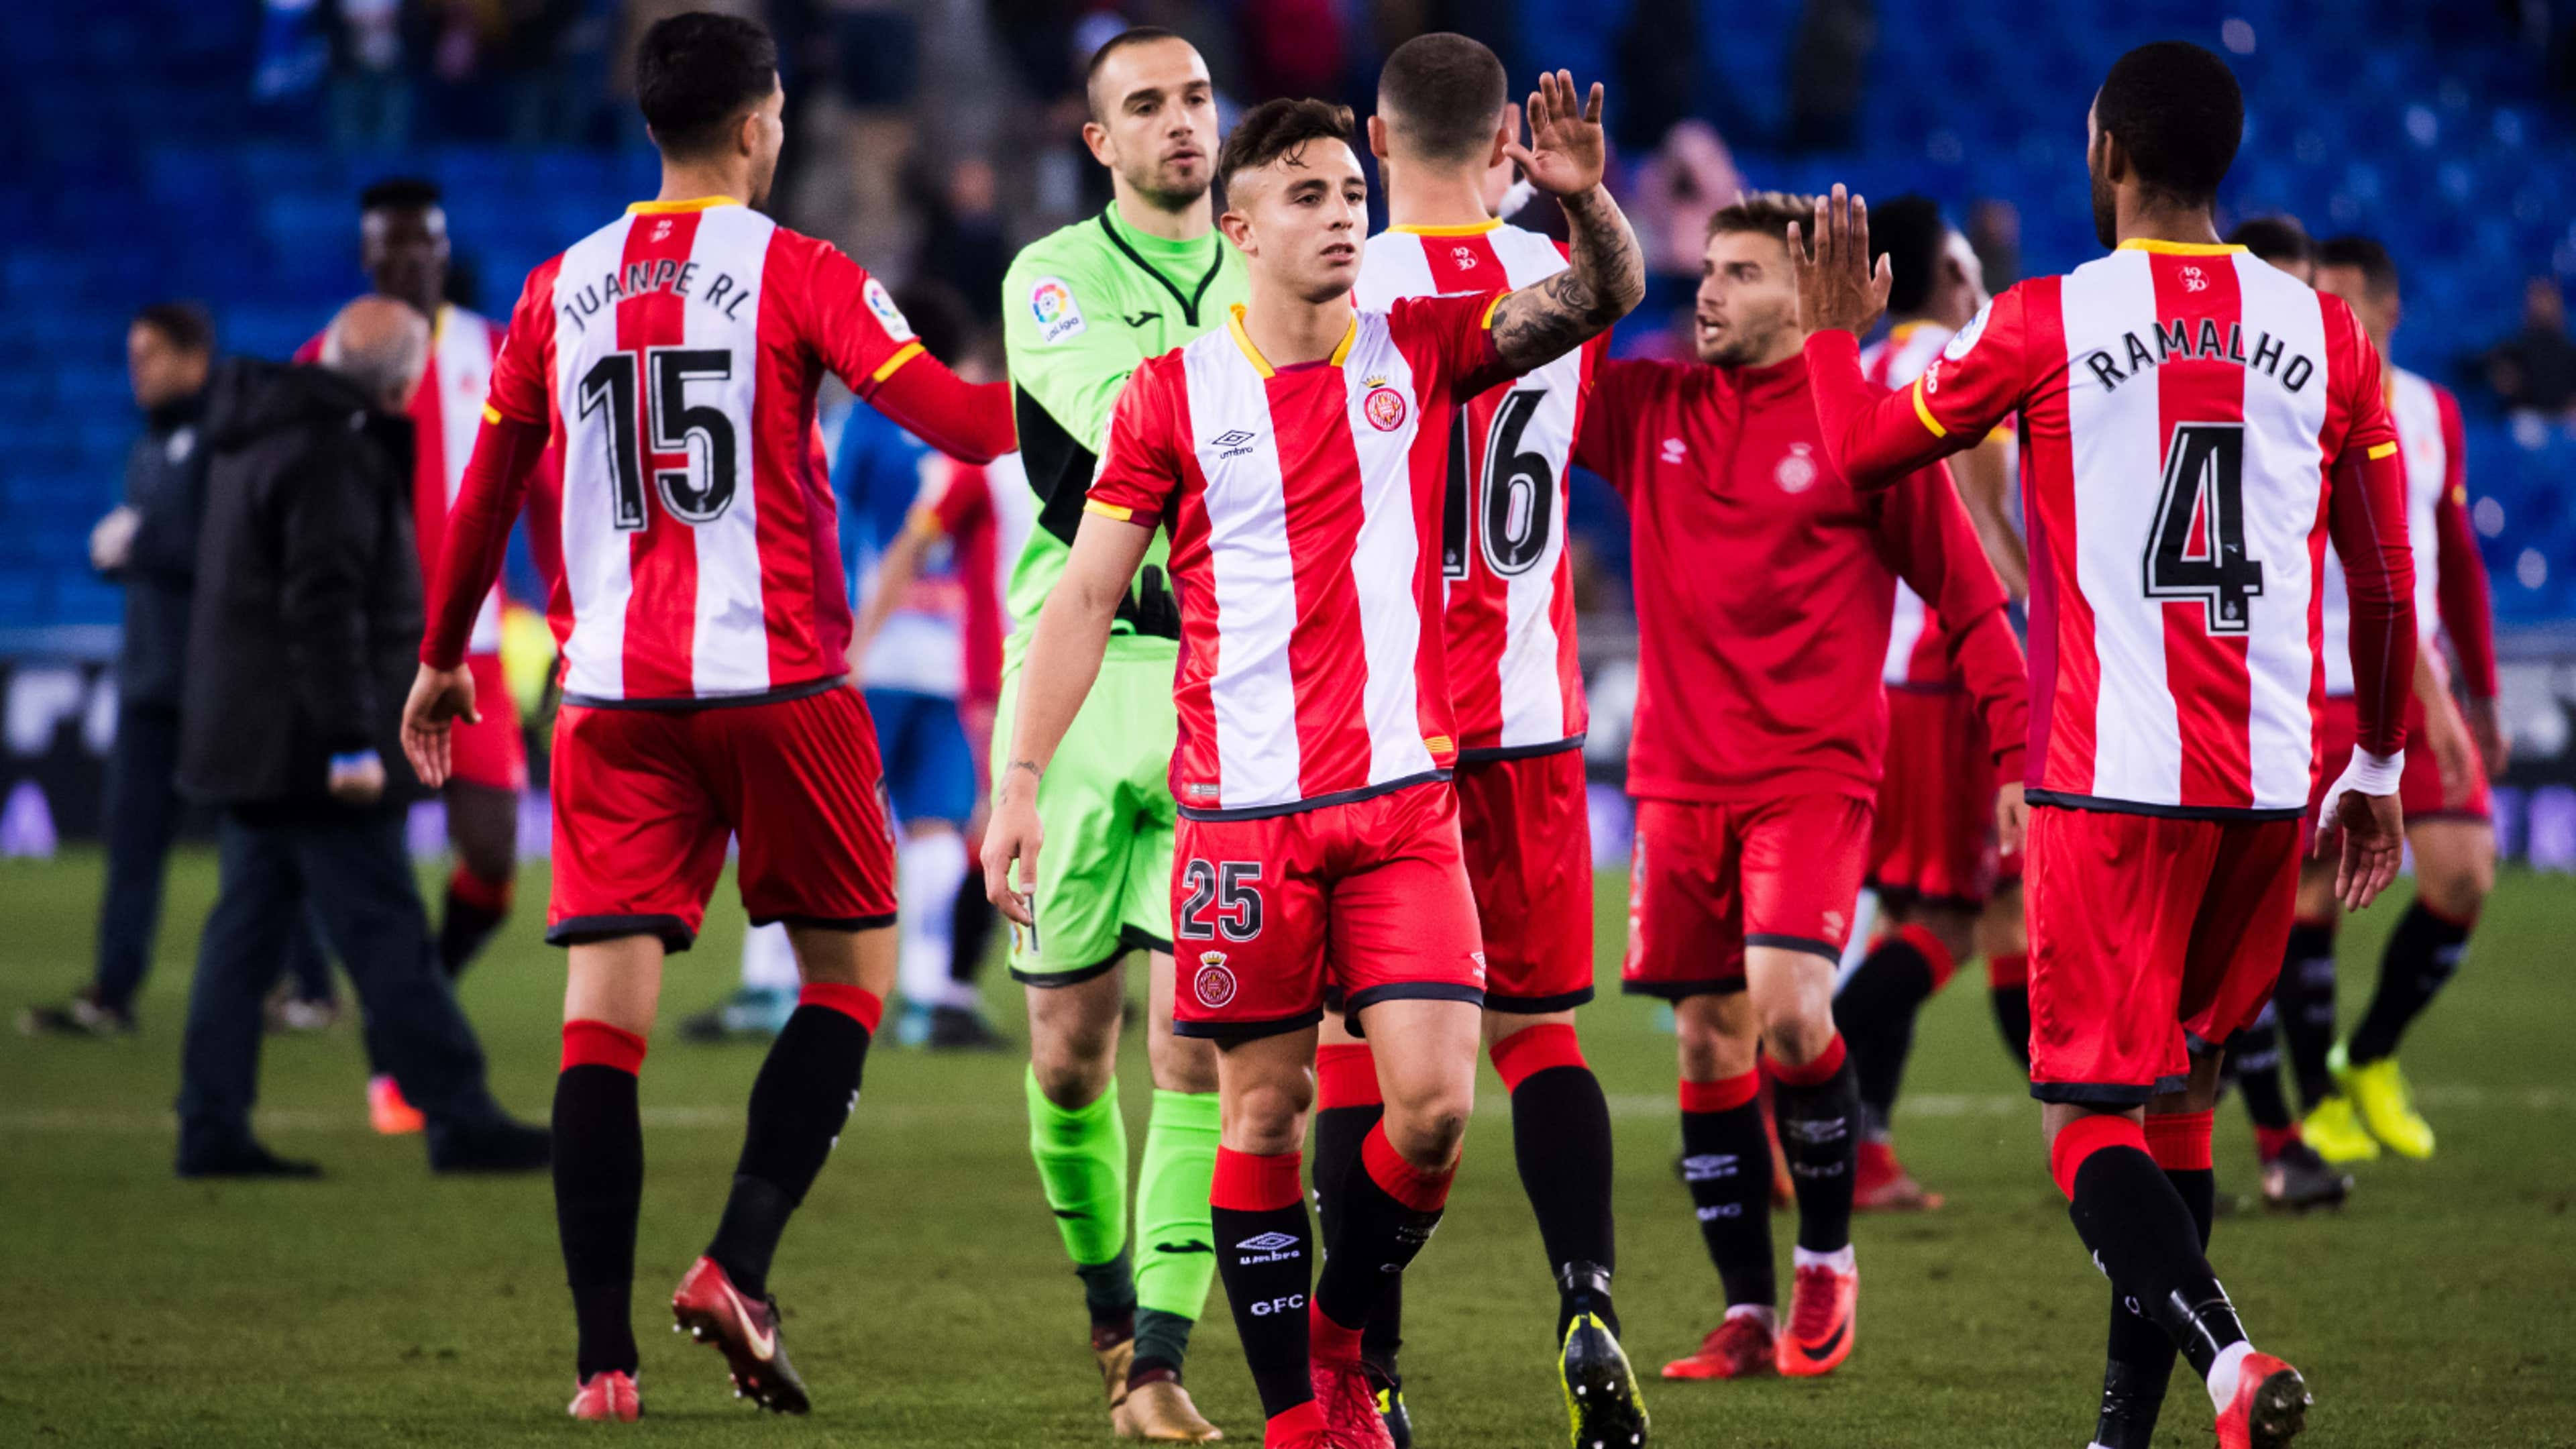 El Girona FC se lanza a por los Z para ganar masa social antes de ampliar  el estadio